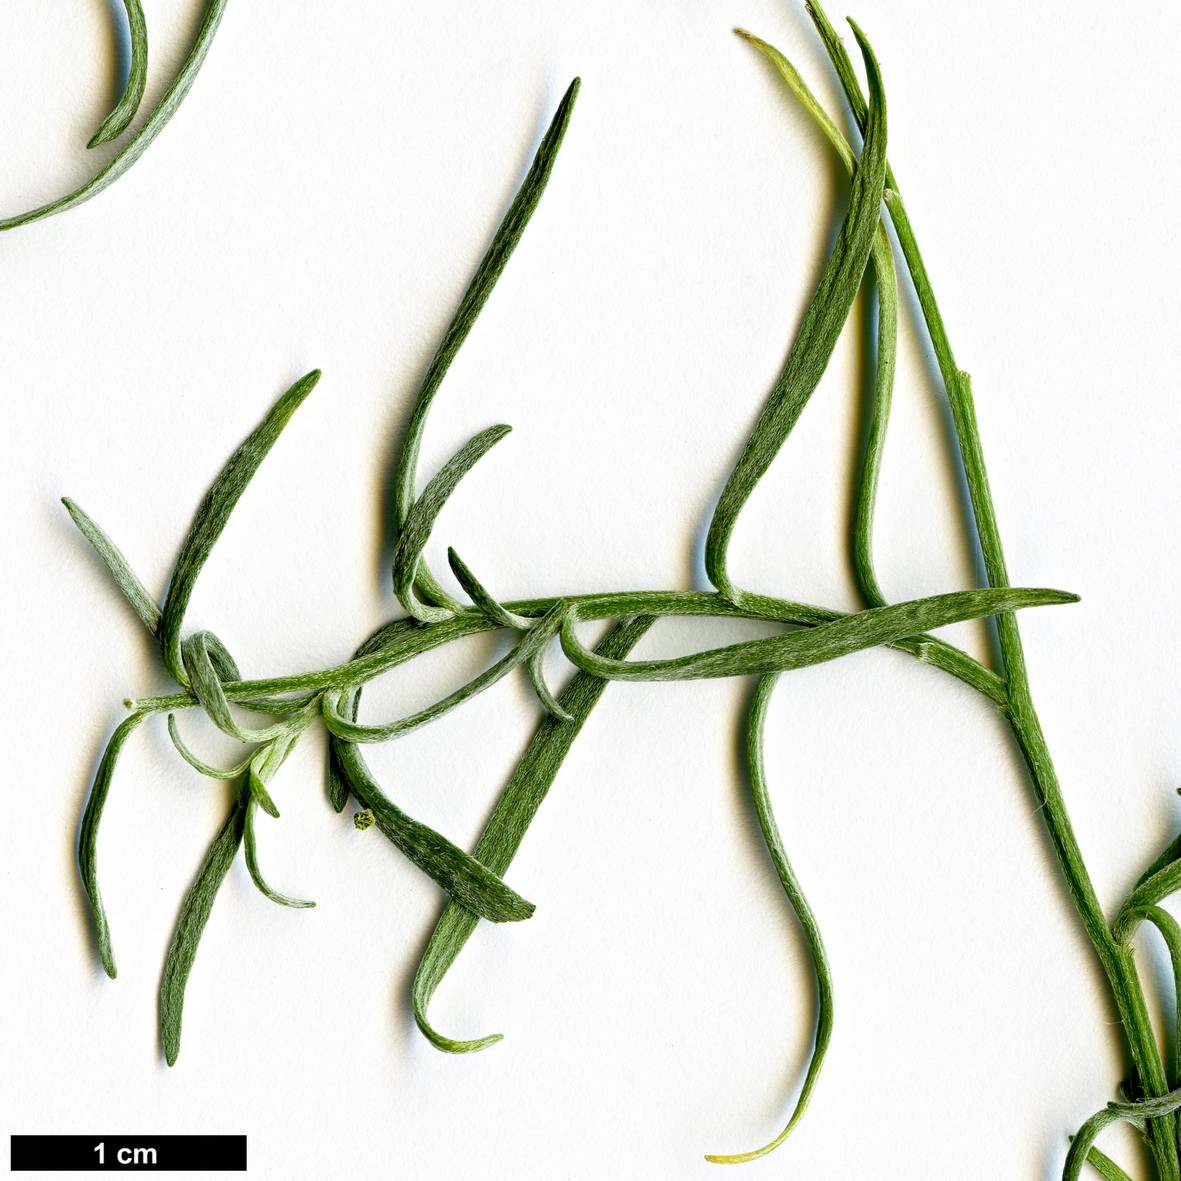 High resolution image: Family: Brassicaceae - Genus: Lobularia - Taxon: canariensis - SpeciesSub: subsp. intermedia